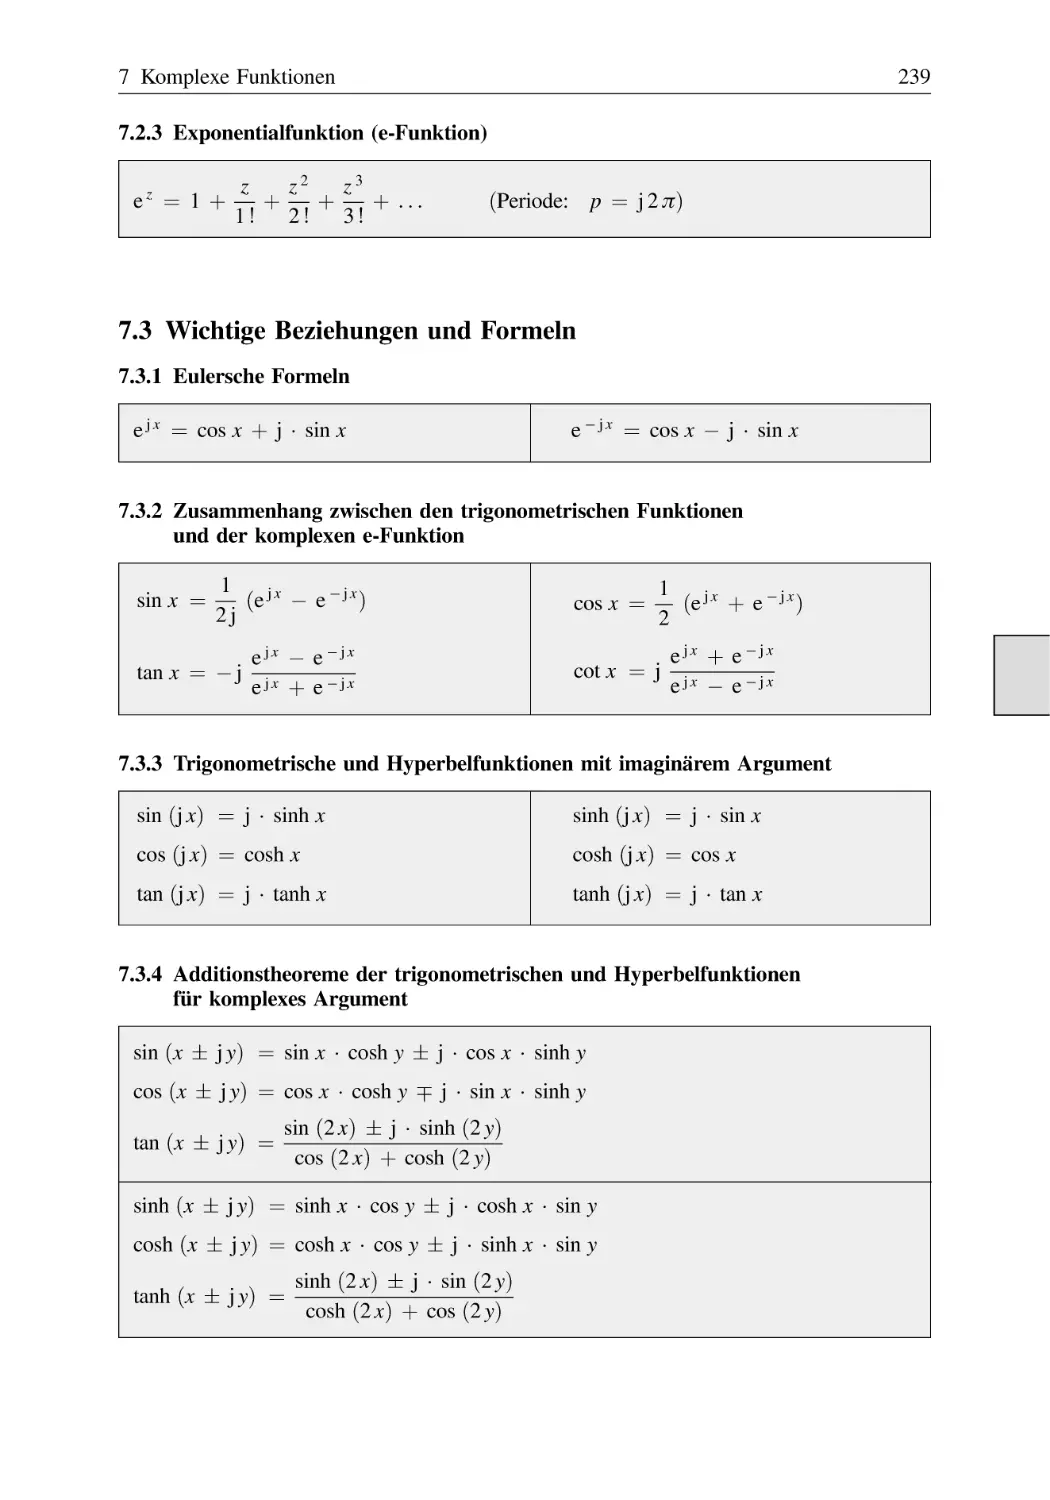 7.2.3 Exponentialfunktion (e-Funktion)
7.3 Wichtige Beziehungen und Formeln
7.3.1 Eulersche Formeln
7.3.2 Zusammenhang zwischen den trigonometrischen Funktionen und der komplexen e-Funktion
7.3.3 Trigonometrische und Hyperbelfunktionen mit imaginärem Argument
7.3.4 Additionstheoreme der trigonometrischen und Hyperbelfunktionen für komplexes Argument